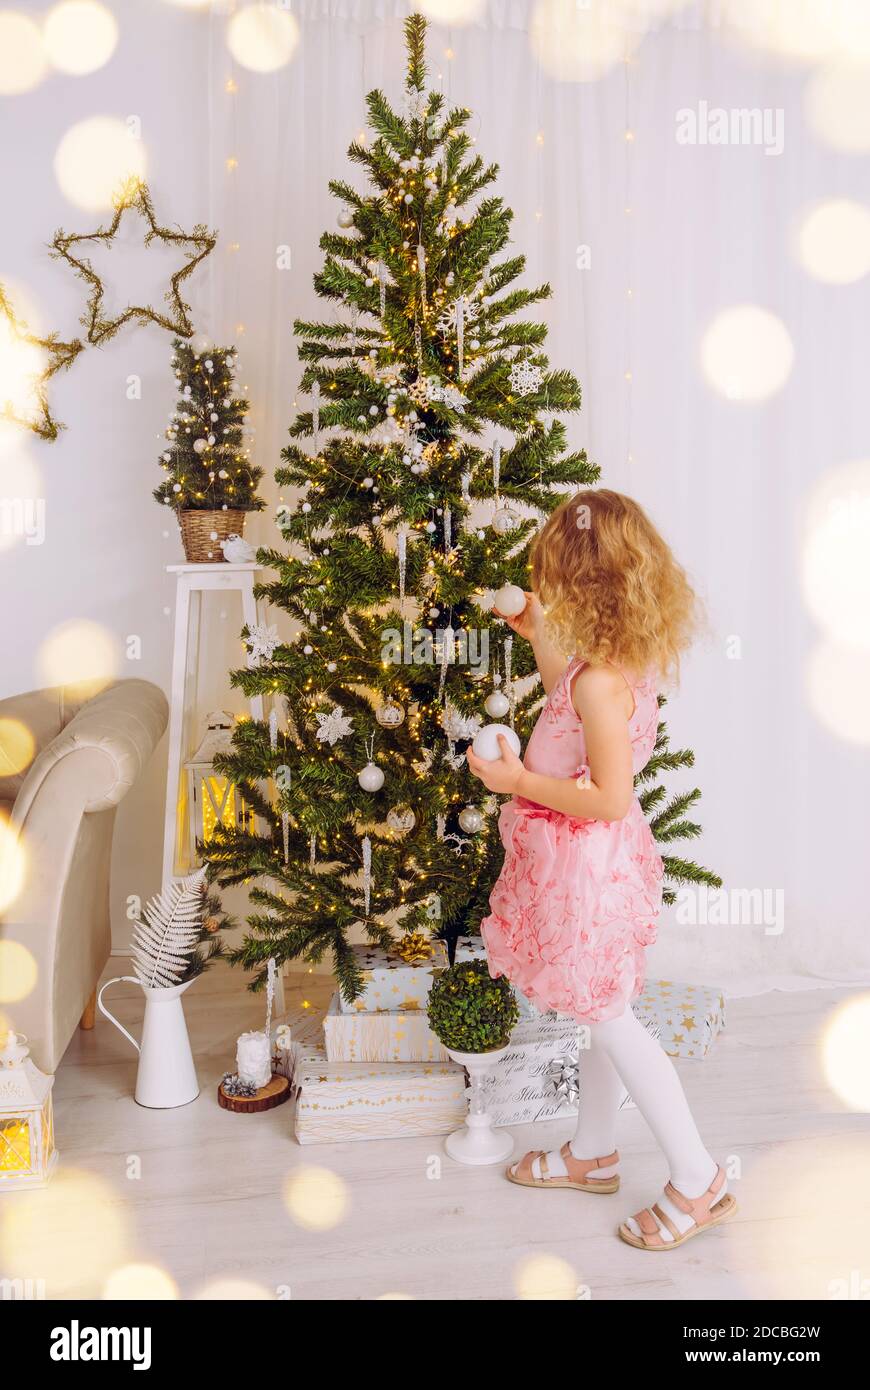 Unerkennbar 6 Jahre altes Mädchen in rosa Kleid, hängende Weihnachtskugel Ornamente auf Weihnachtsbaum. Weißes, minimalistisches Wohnzimmer. Stockfoto